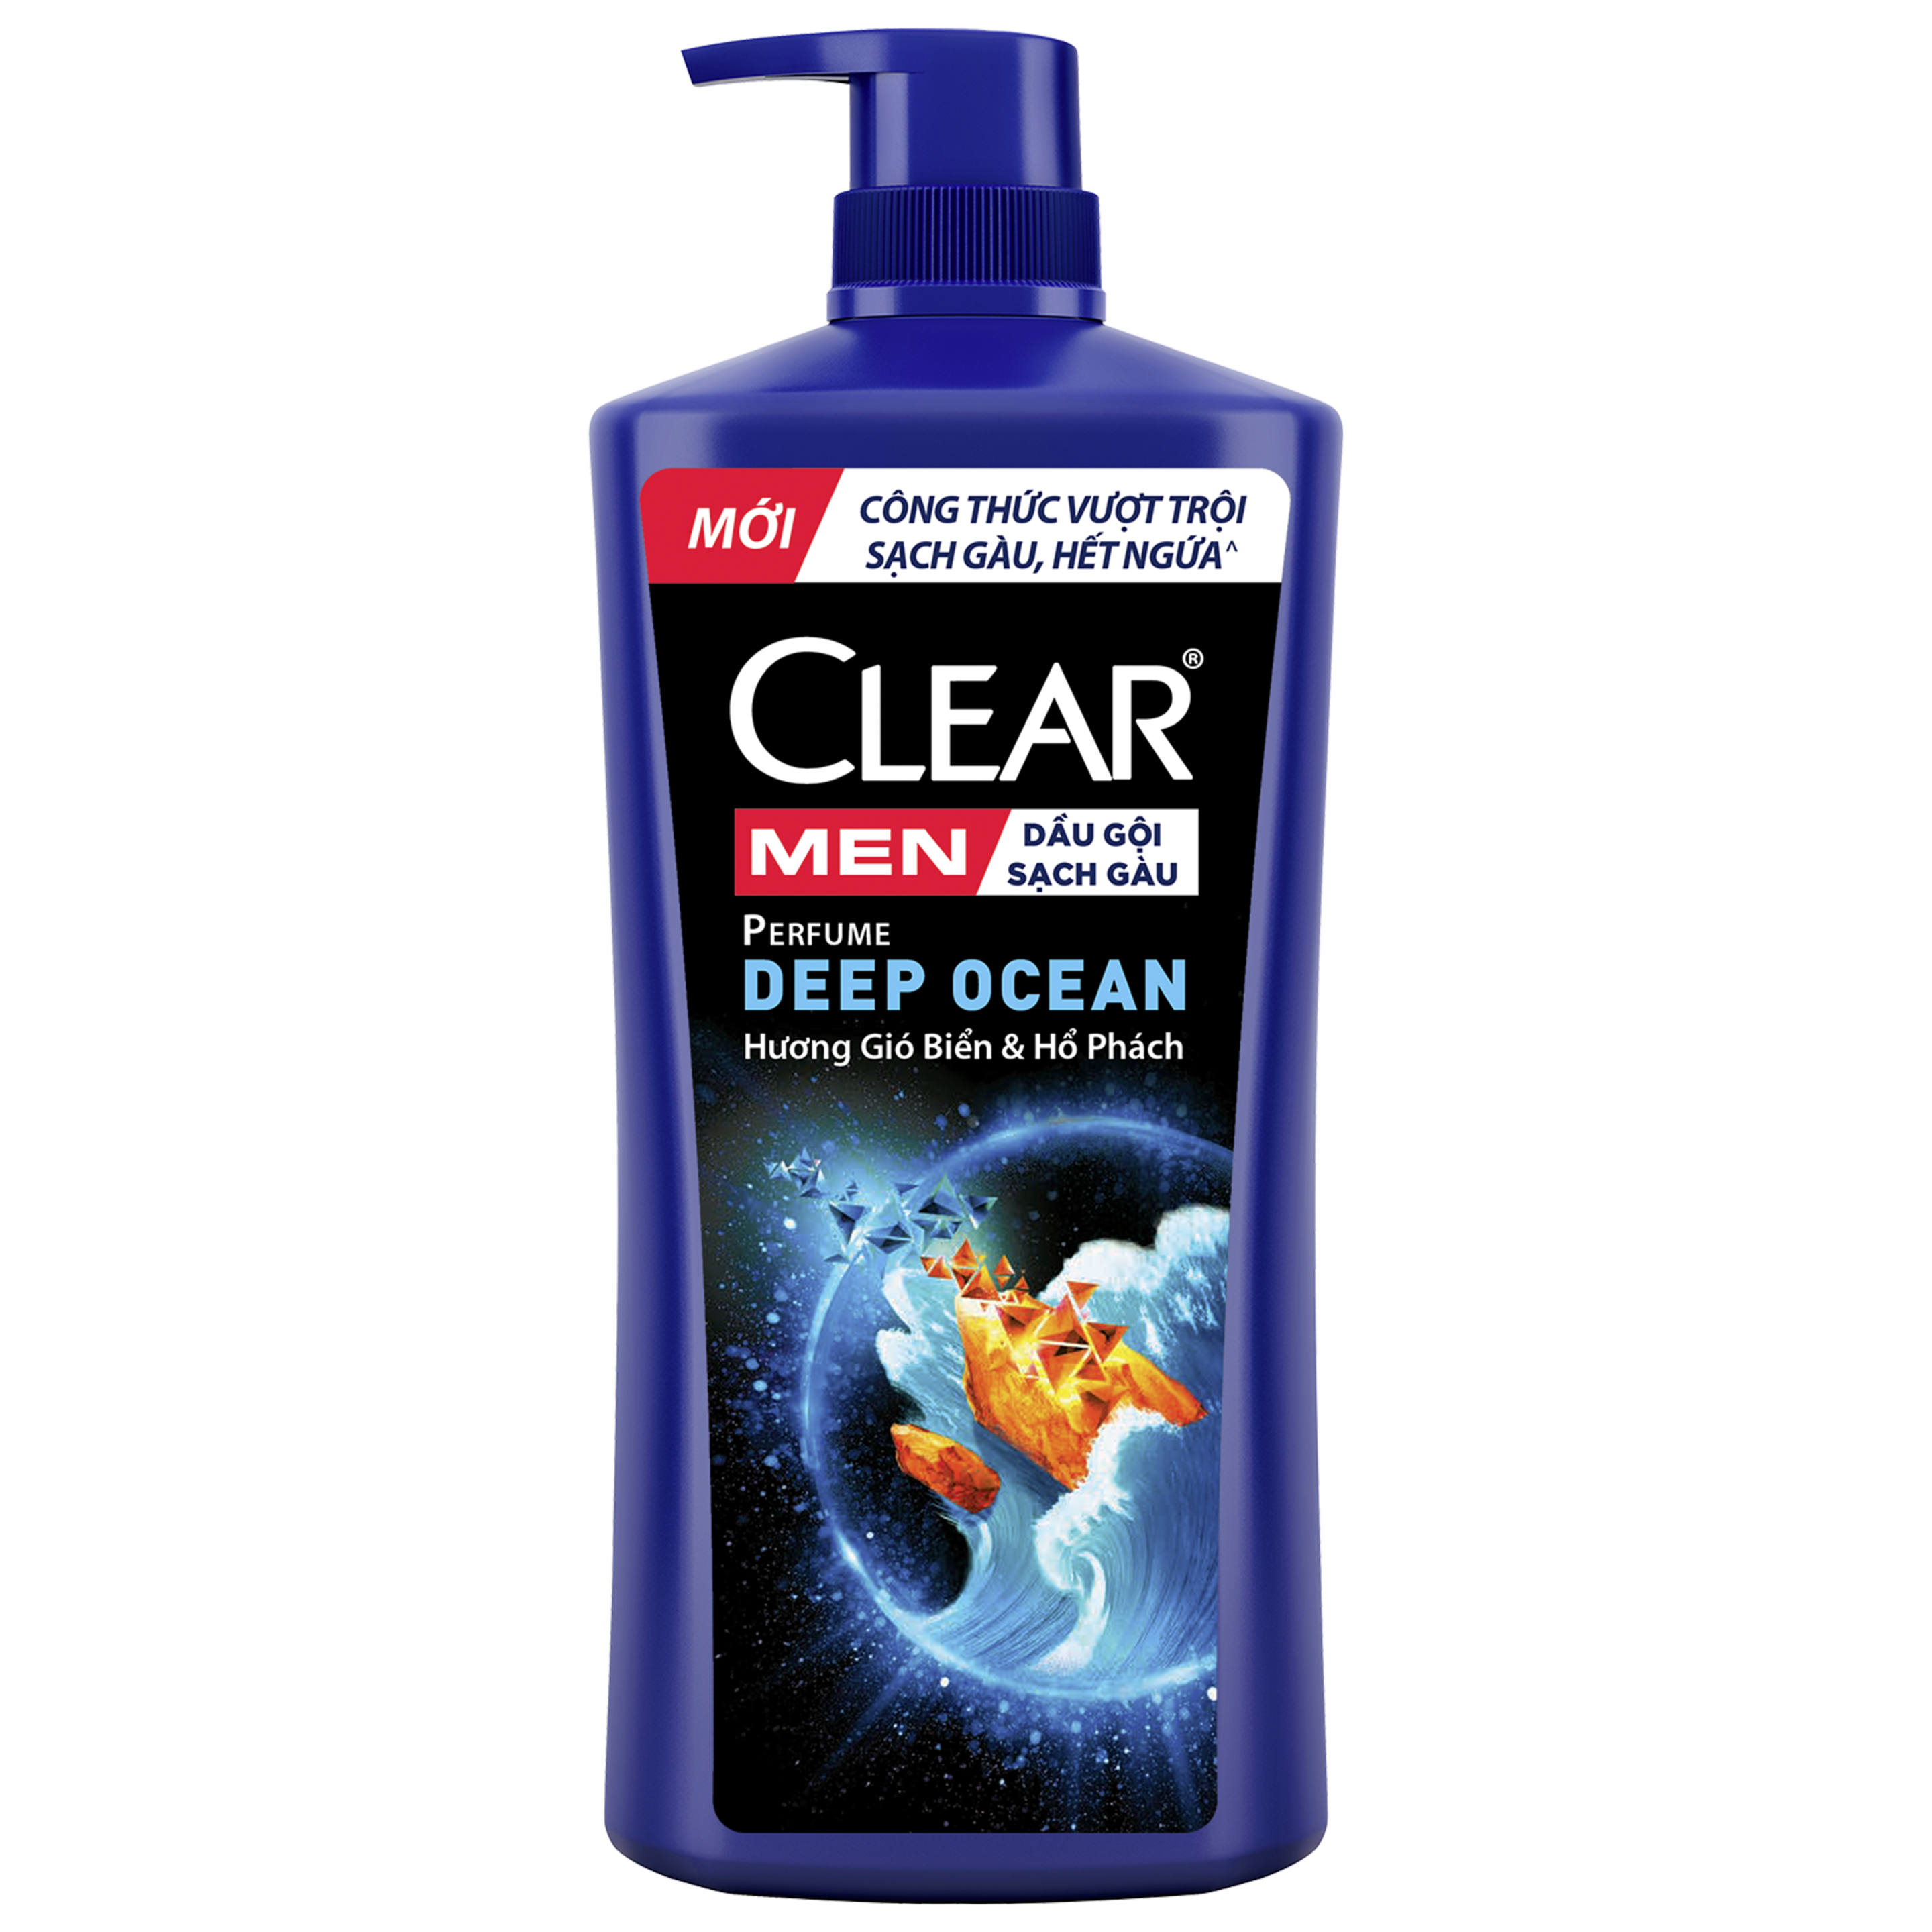 Hình ảnh mặt trước sản phẩm Dầu gội CLEAR Men Perfume Deep Ocean 840g